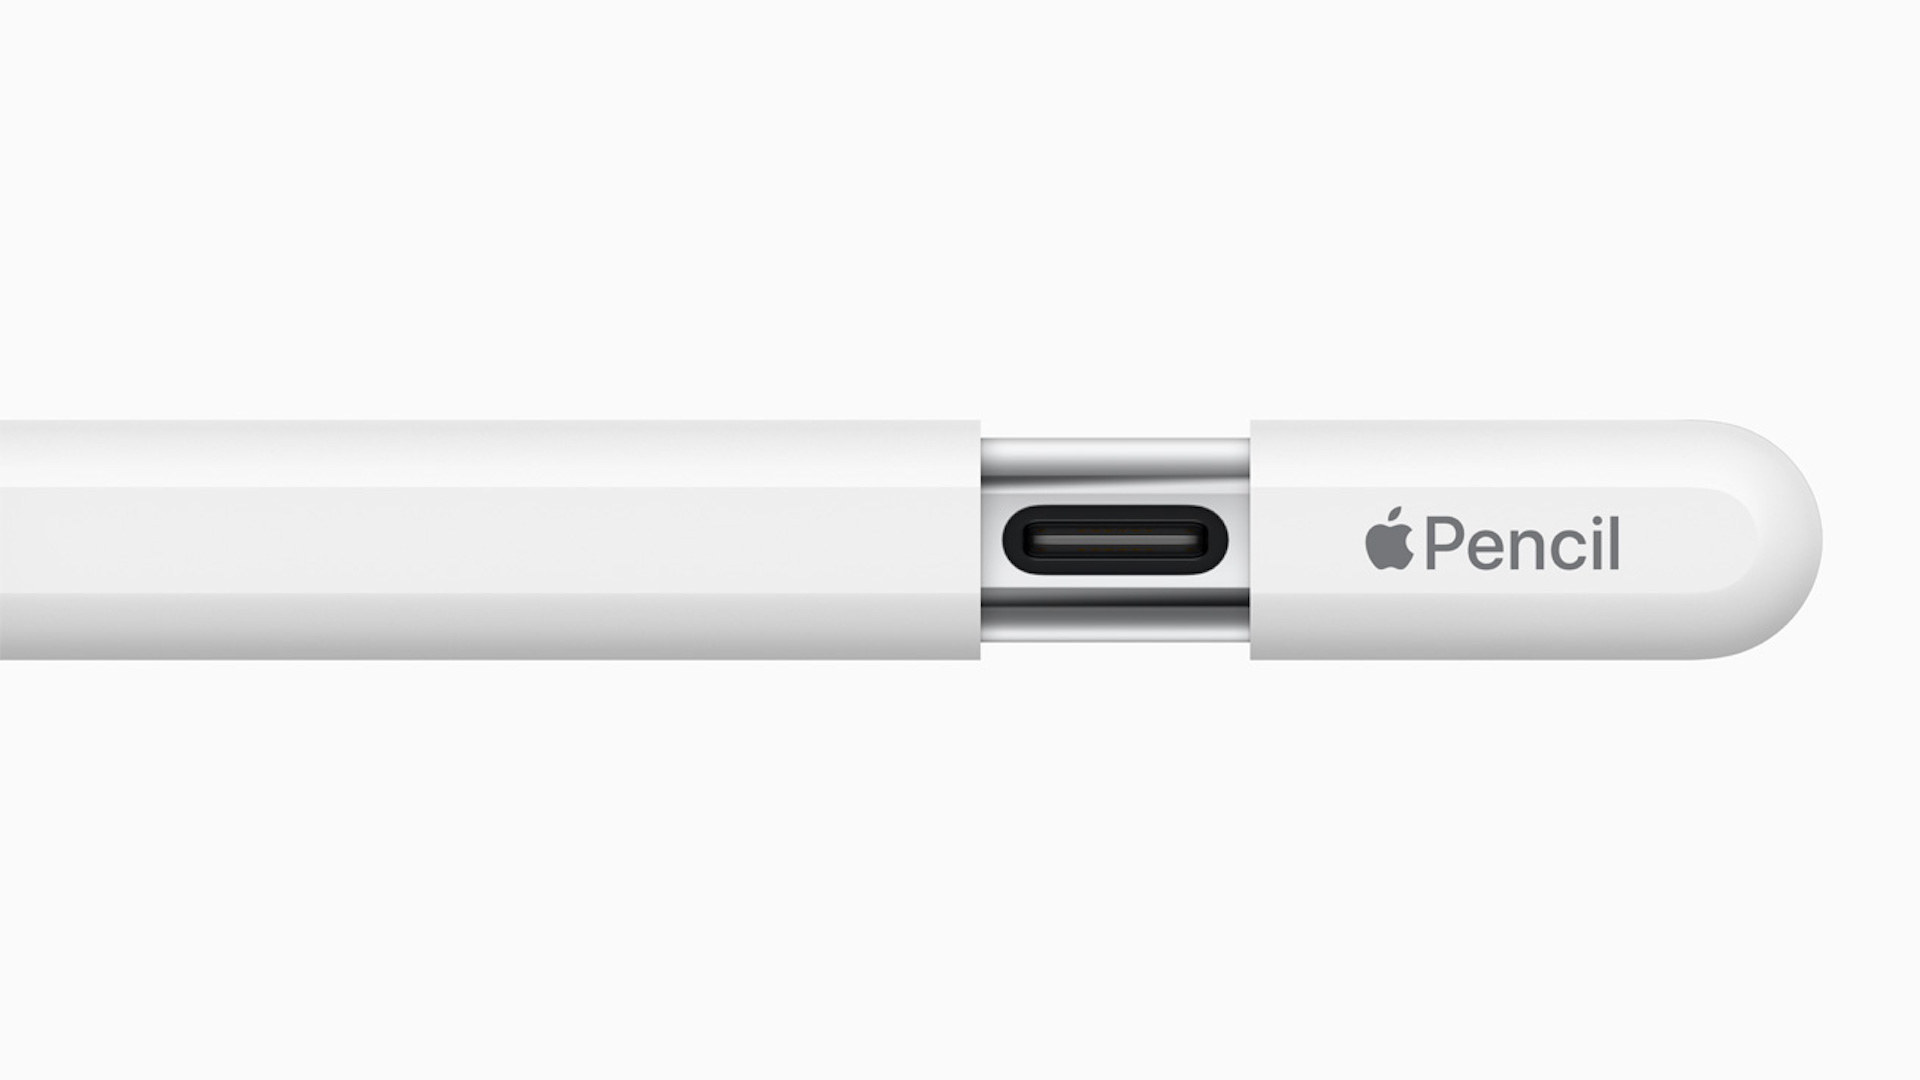 Apple ने अधिक स्वस्त पेन्सिलचे अनावरण केले, जे डिजिटल सर्जनशीलतेमध्ये गेम चेंजर आहे